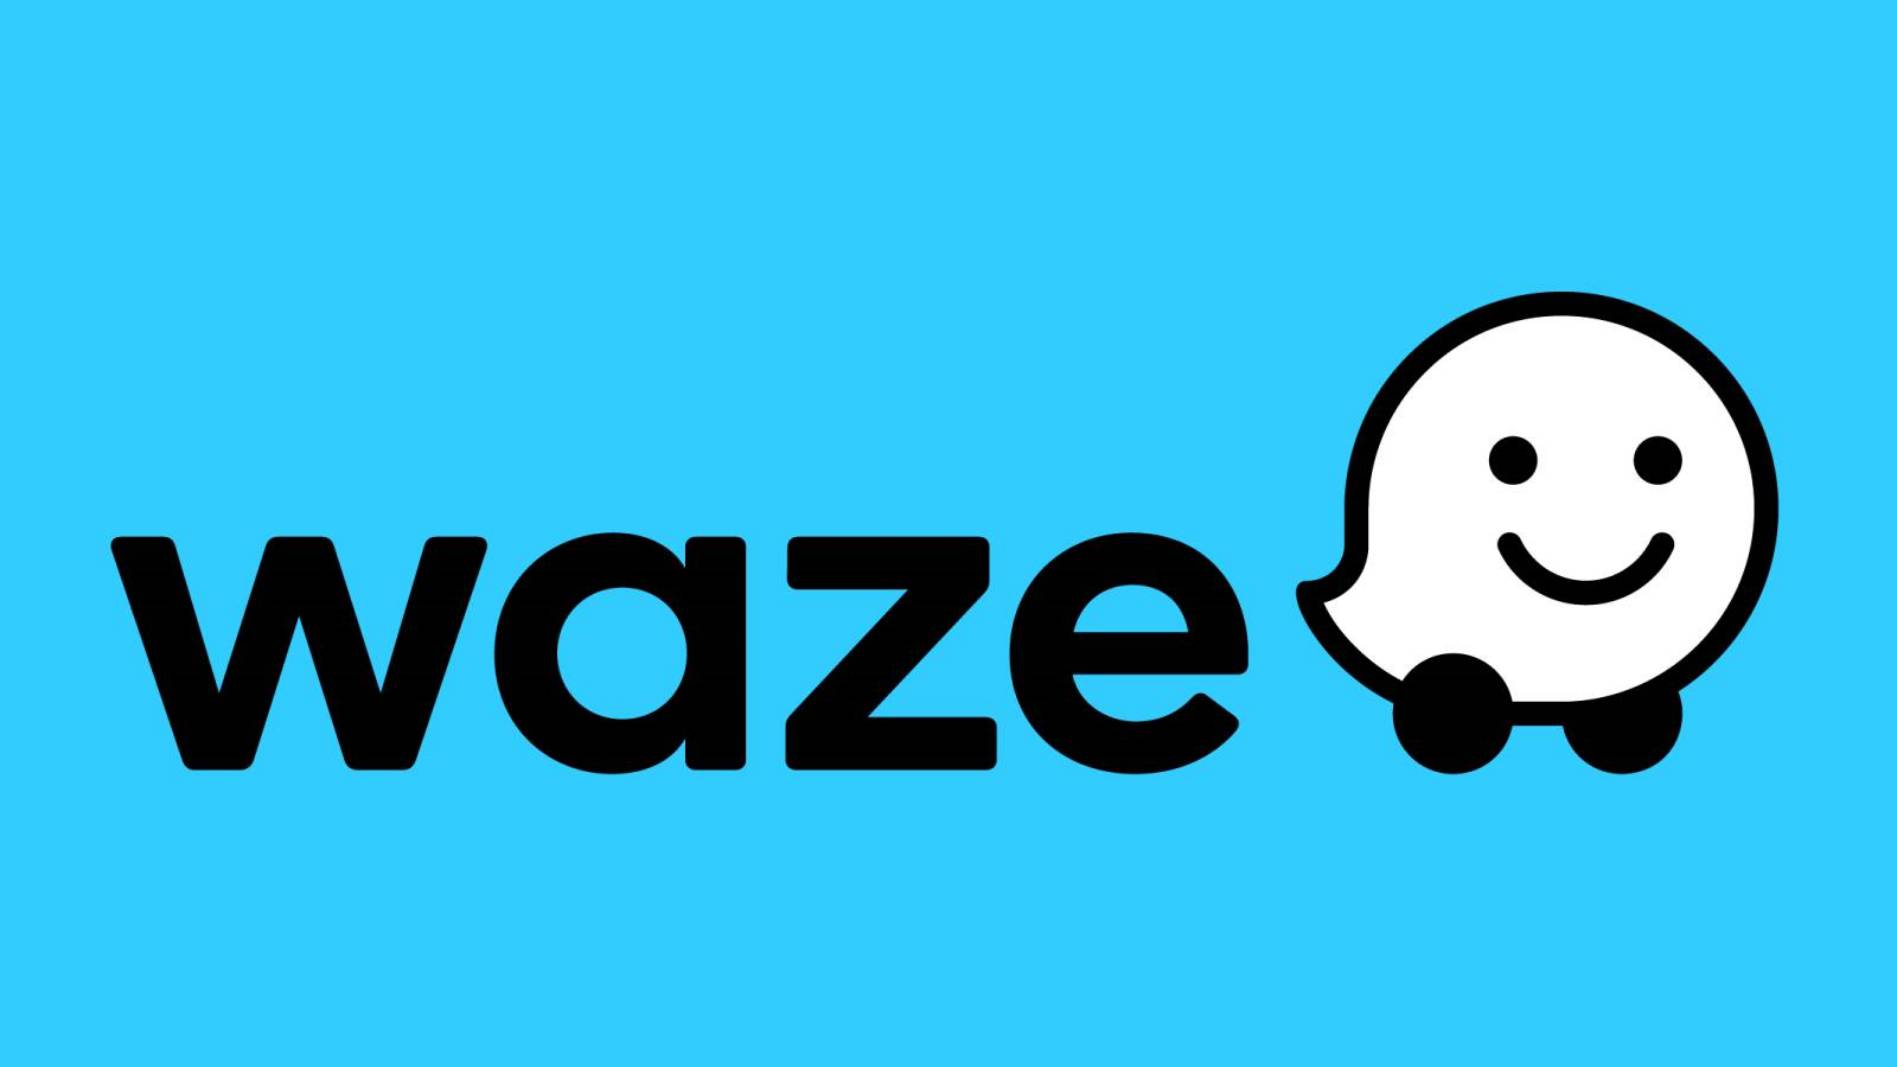 Waze commencera à afficher deux nouvelles alertes sur iPhone et Android